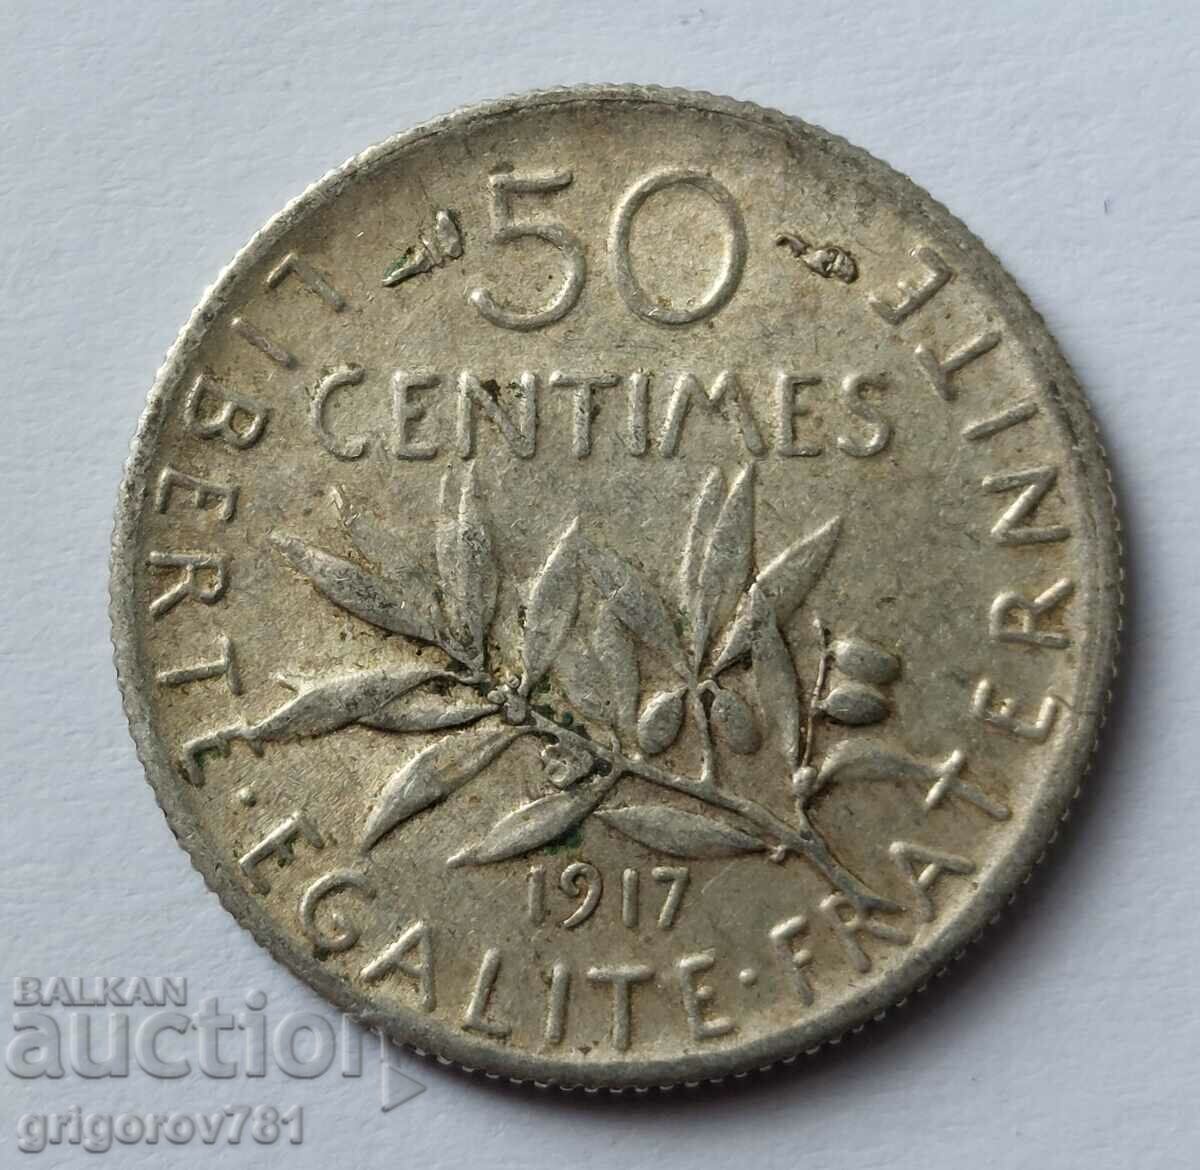 Ασημένιο 50 εκατοστά Γαλλία 1917 - ασημένιο νόμισμα №15